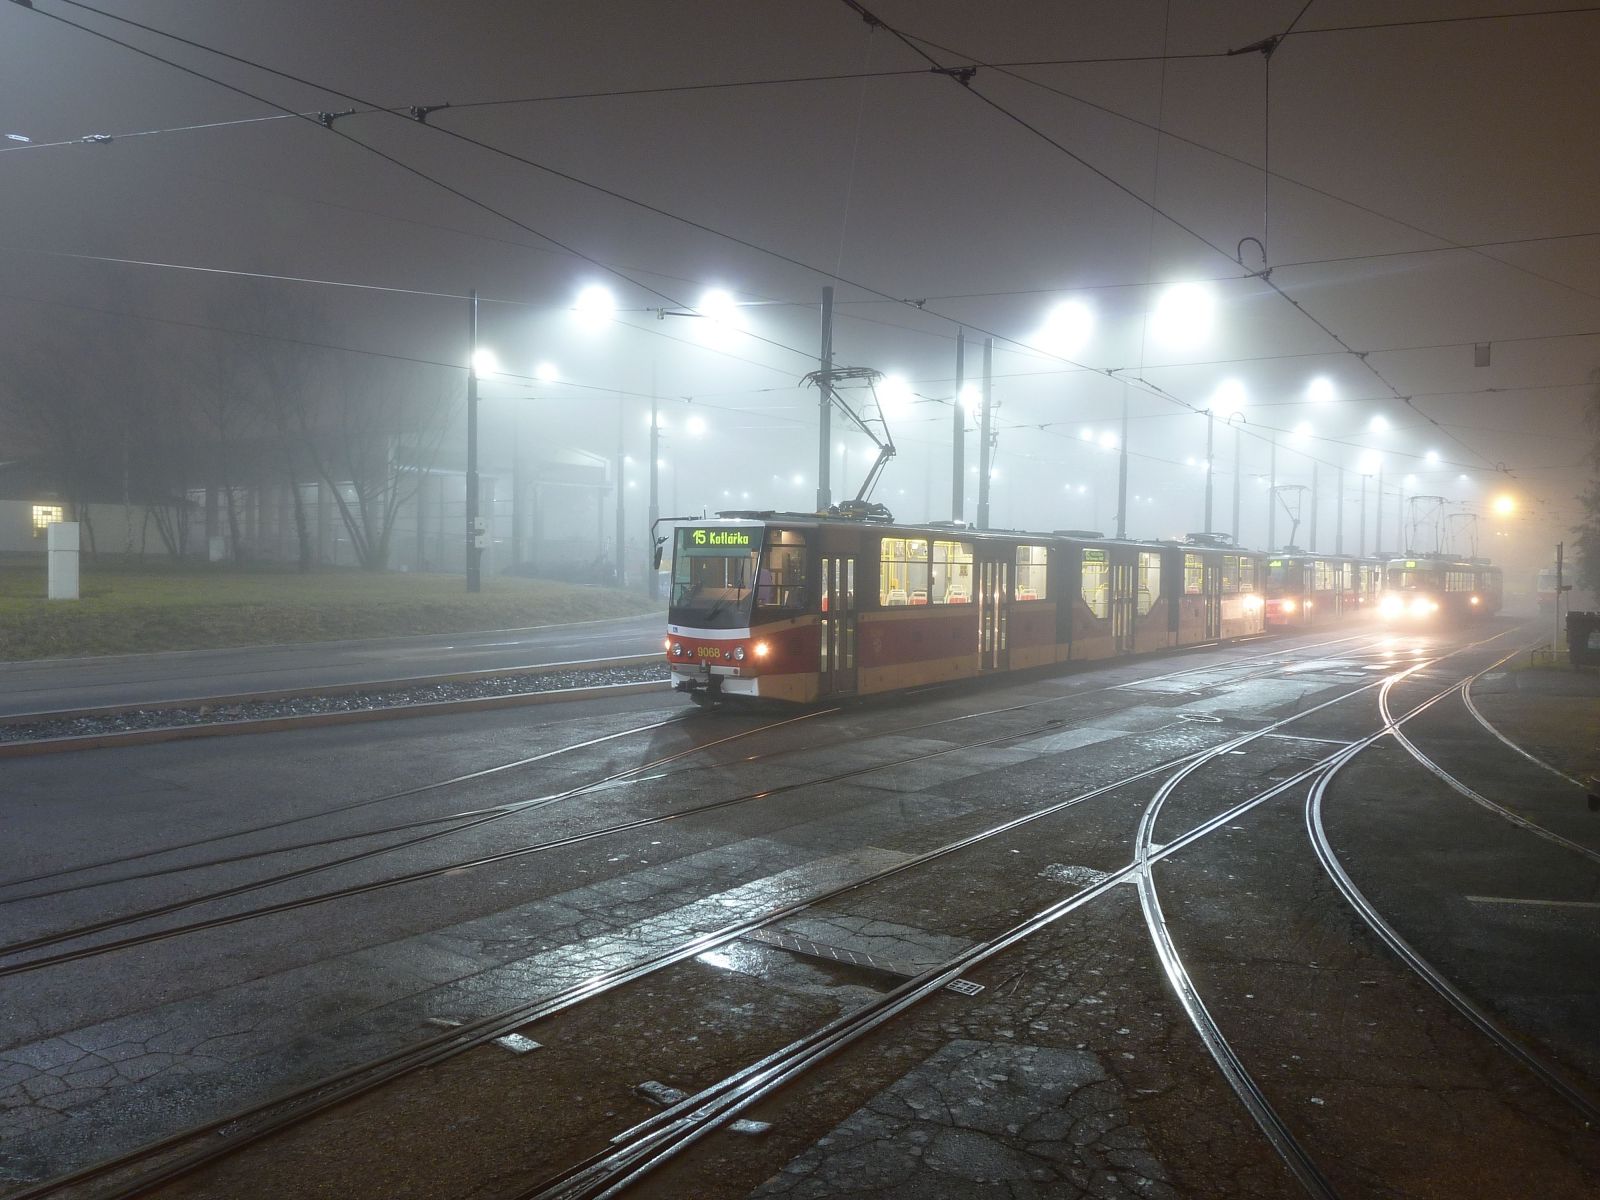 Pražský tramvaják: Každému z nás se někdy stane, že do práce zaspí.